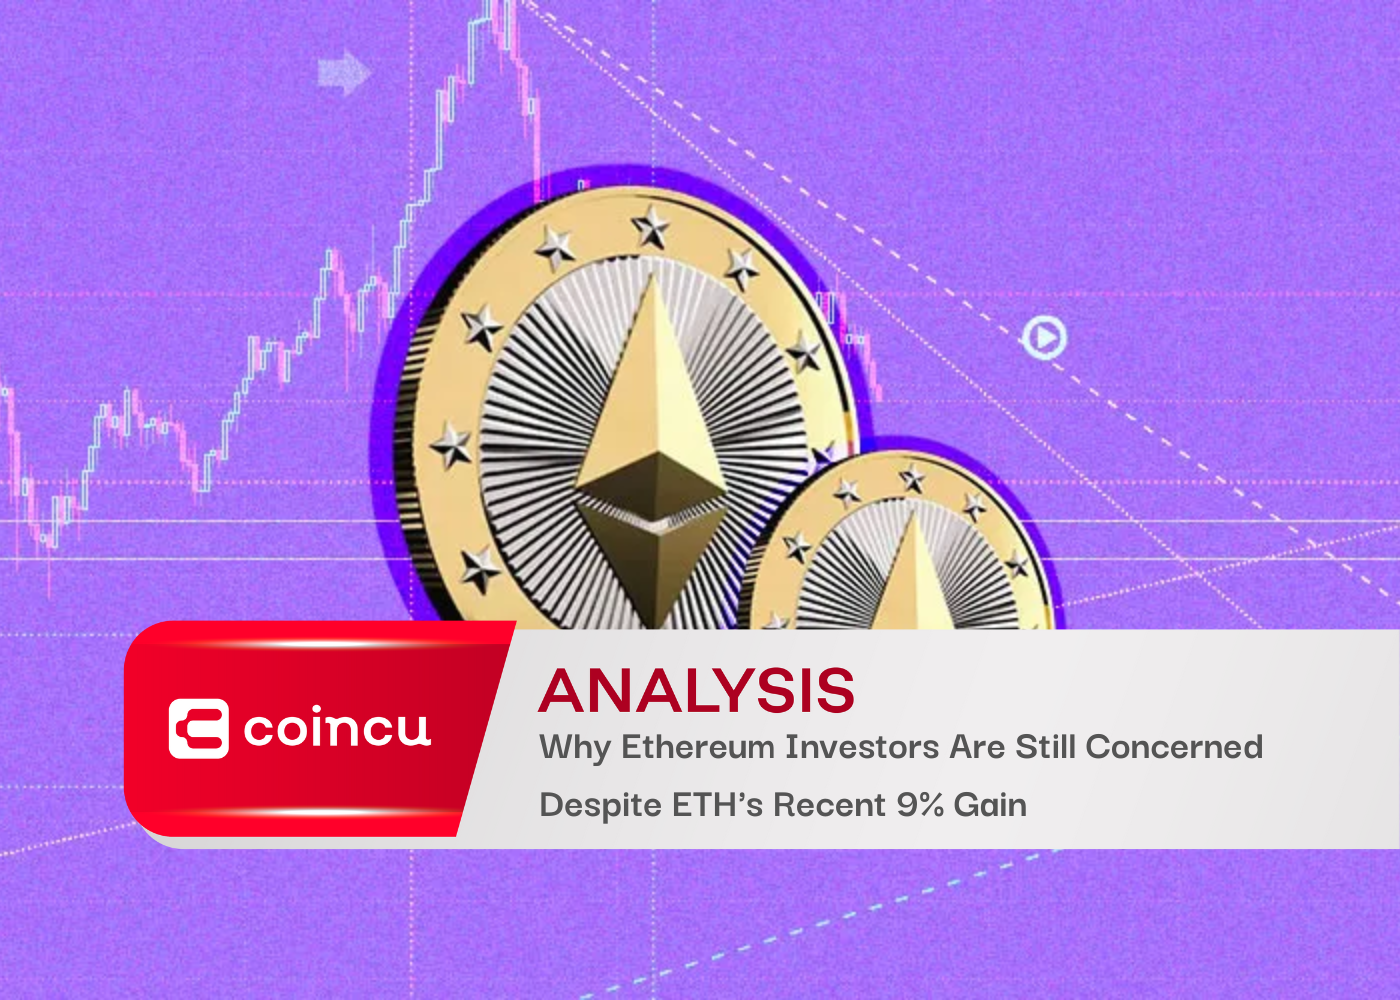 Por qué los inversores de Ethereum todavía están preocupados a pesar de la reciente ganancia del 9% de ETH